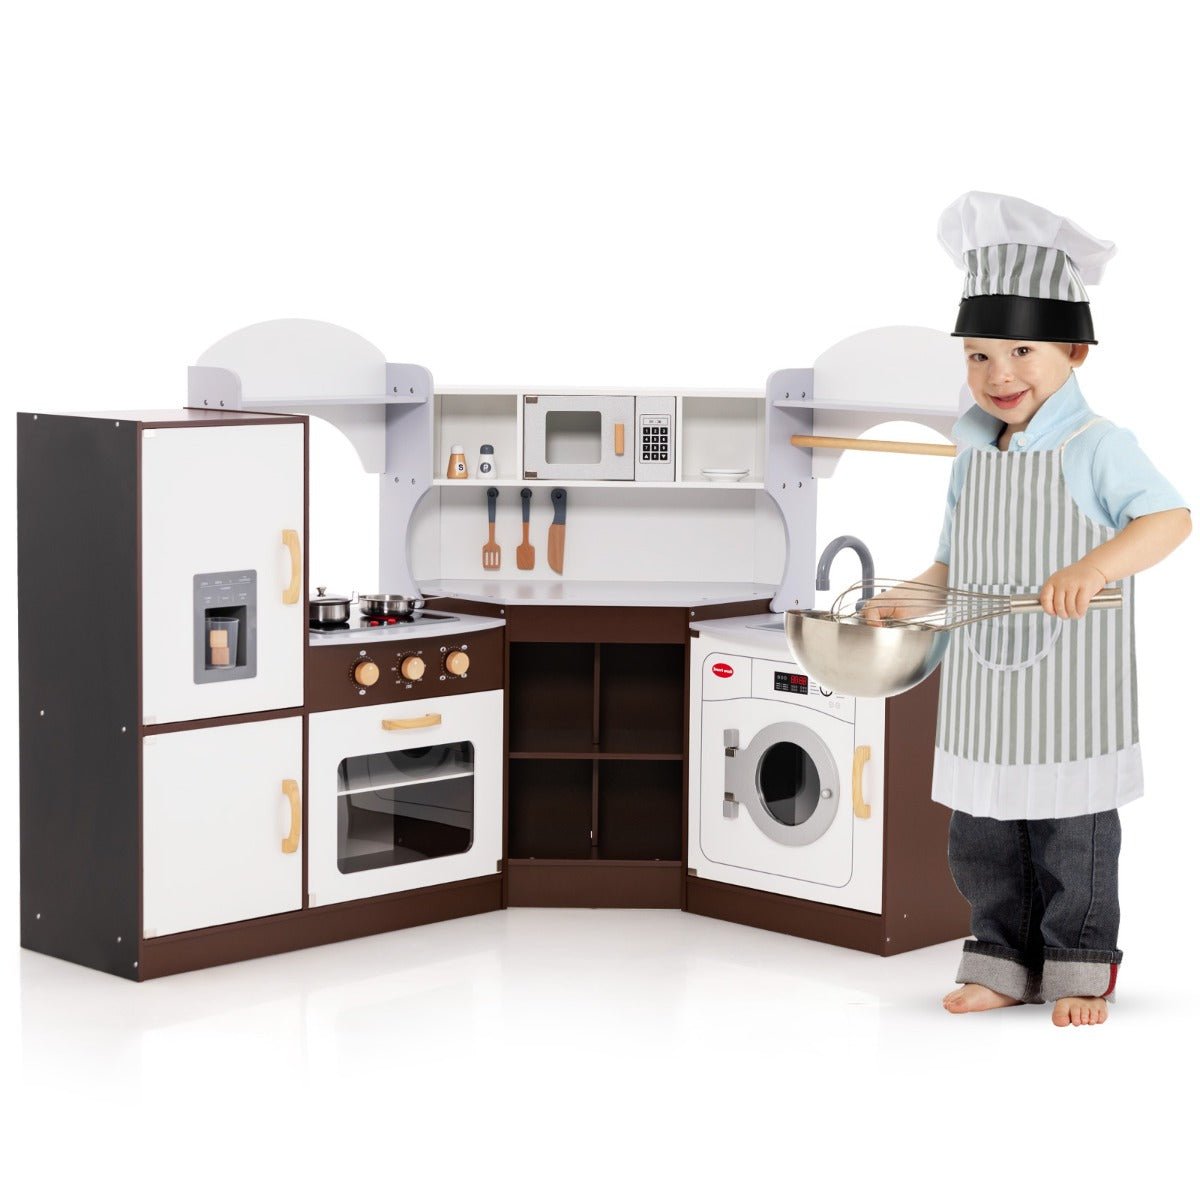 Interactive Toy Kitchen - Warm Brown Hue